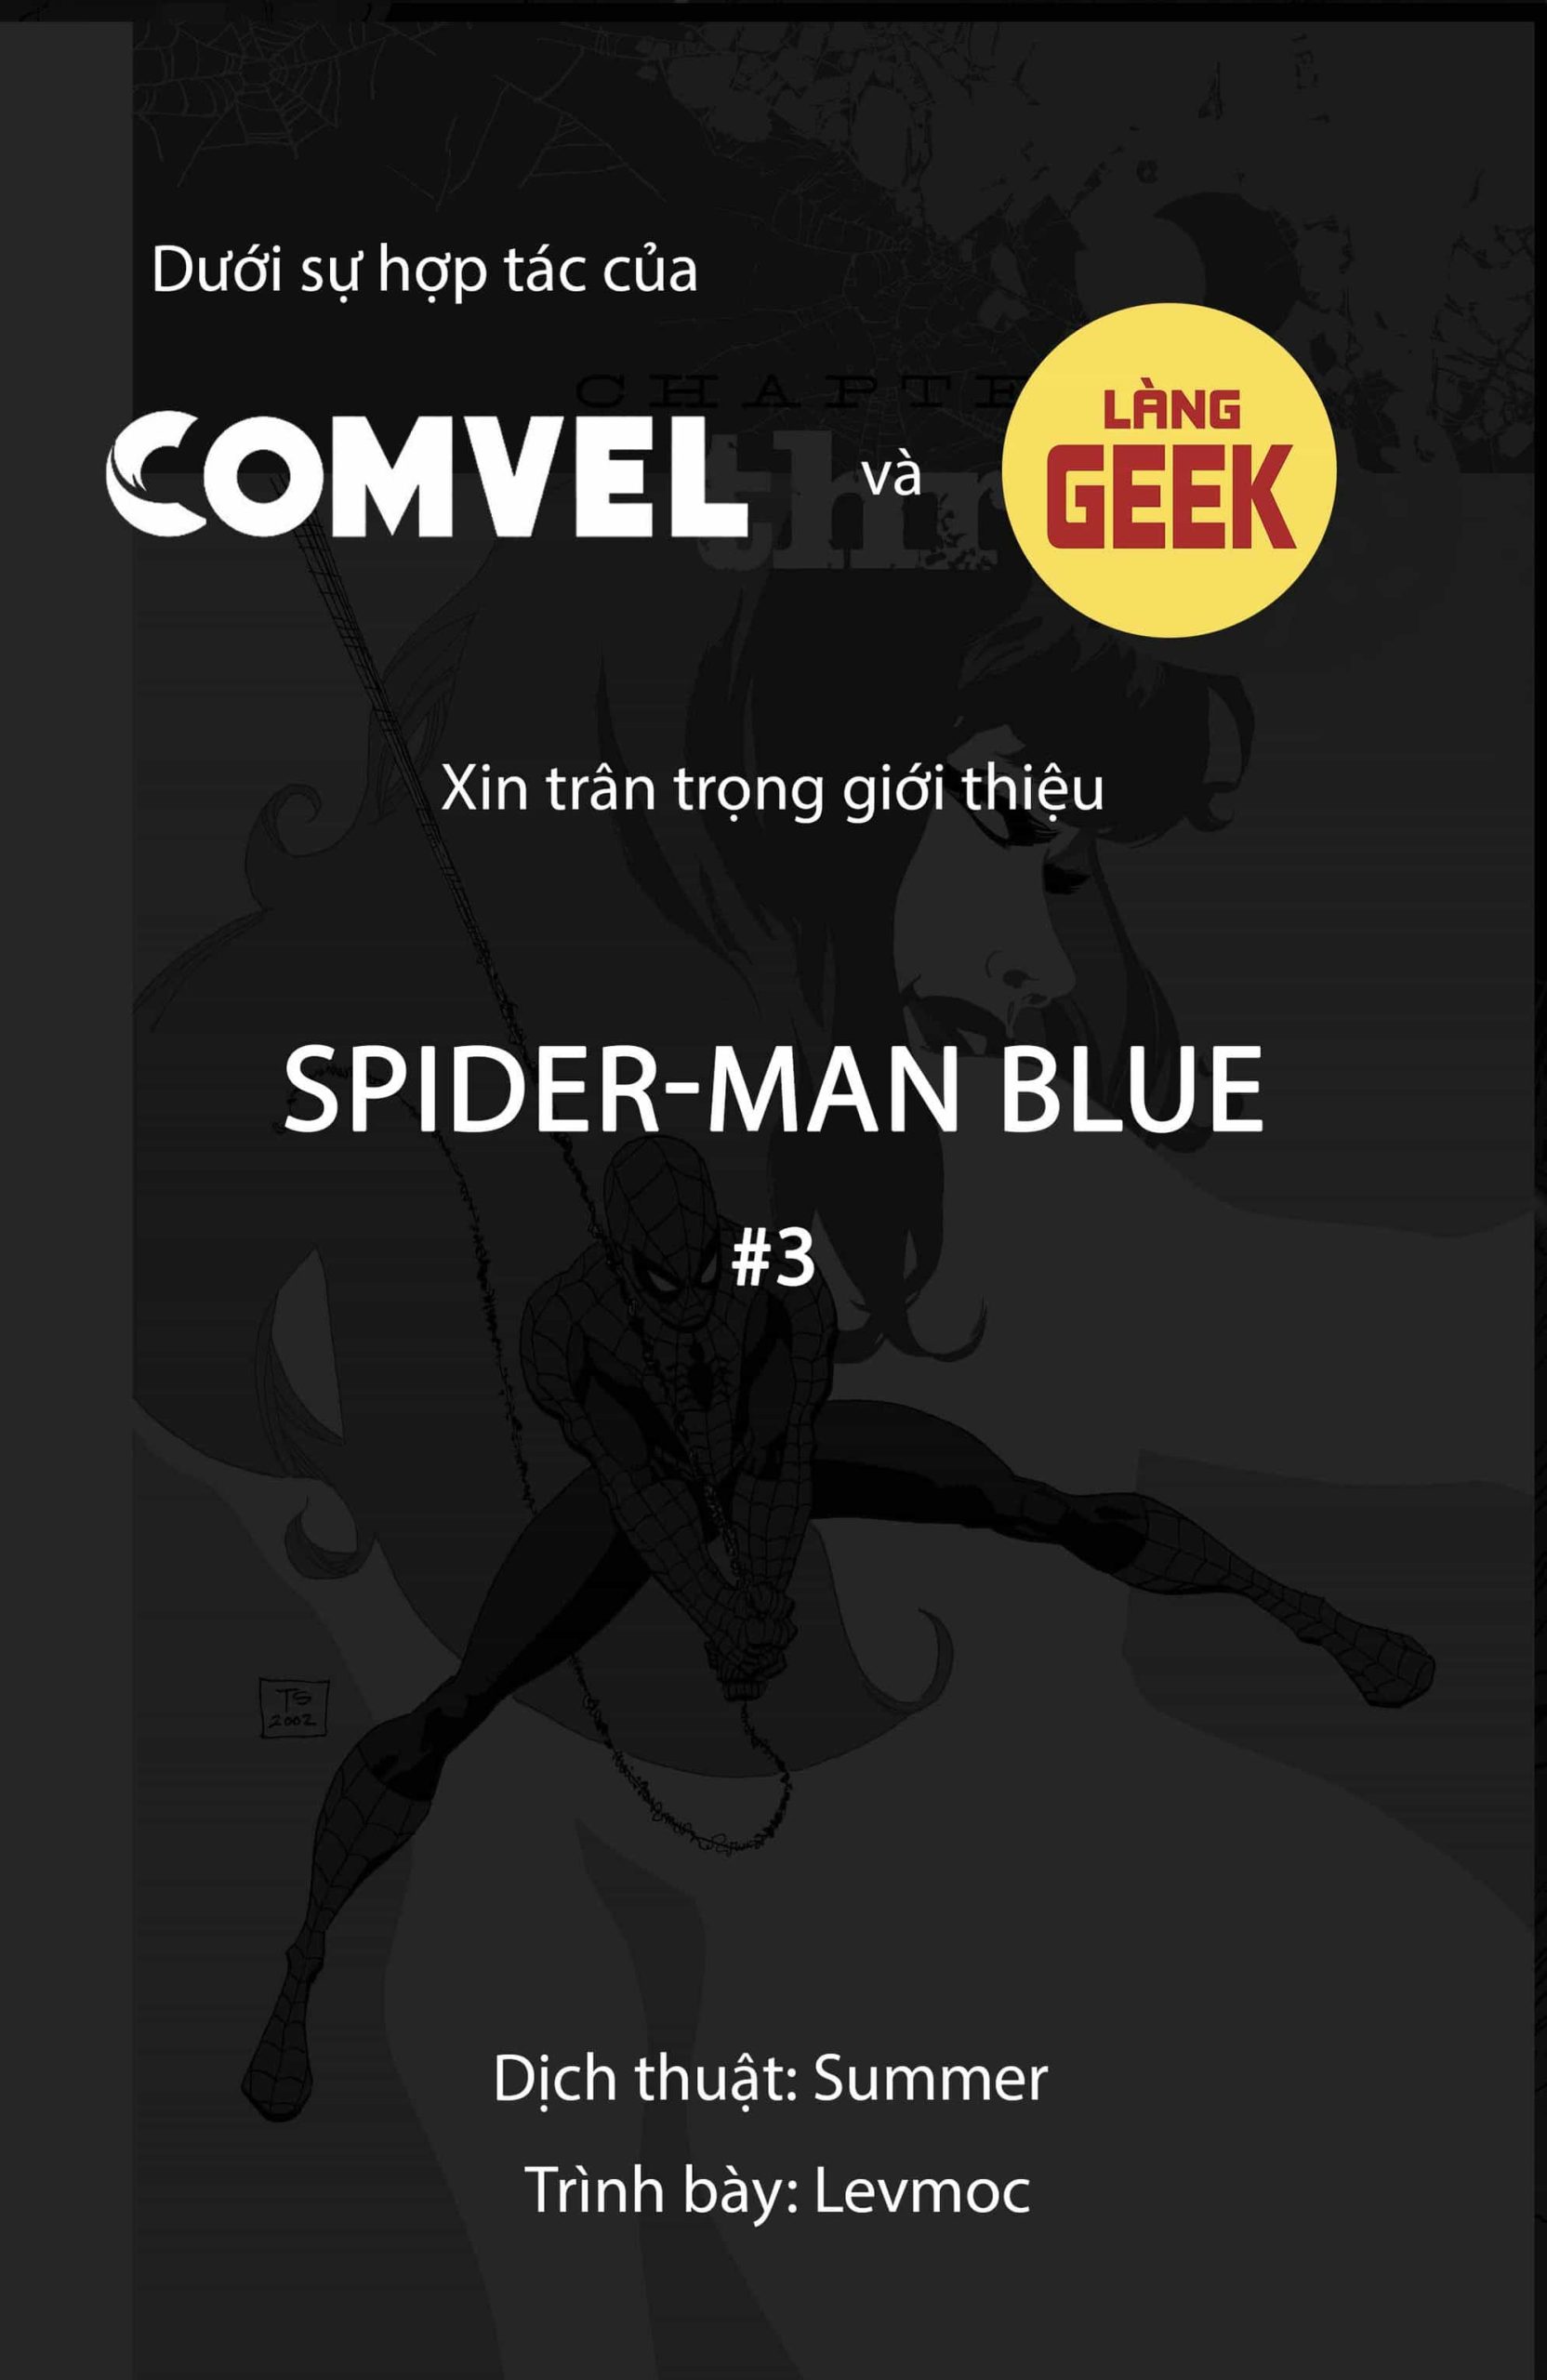 https://langgeek.net/wp-content/webpc-passthru.php?src=https://langgeek.net/wp-content/uploads/2022/11/Spider-Man-Blue-052-1-scaled.jpg&nocache=1